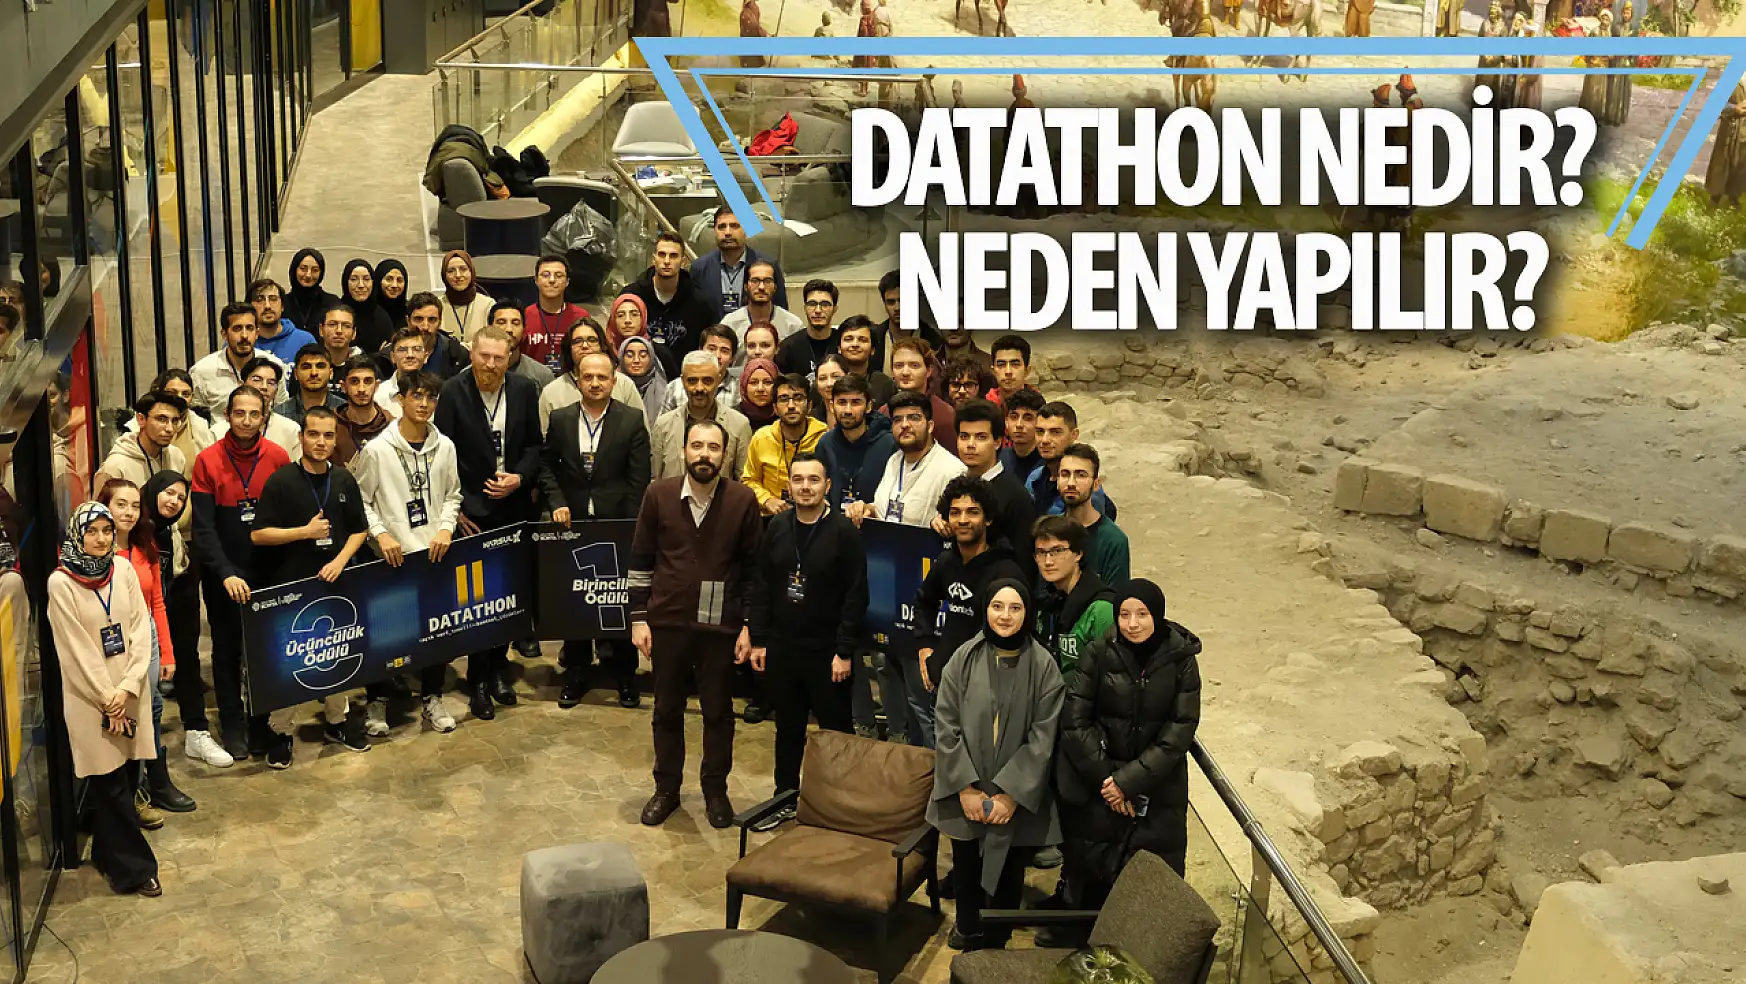 Konya Büyükşehir Belediyesi'nden 2'inci 'Datathon' etkinliği!